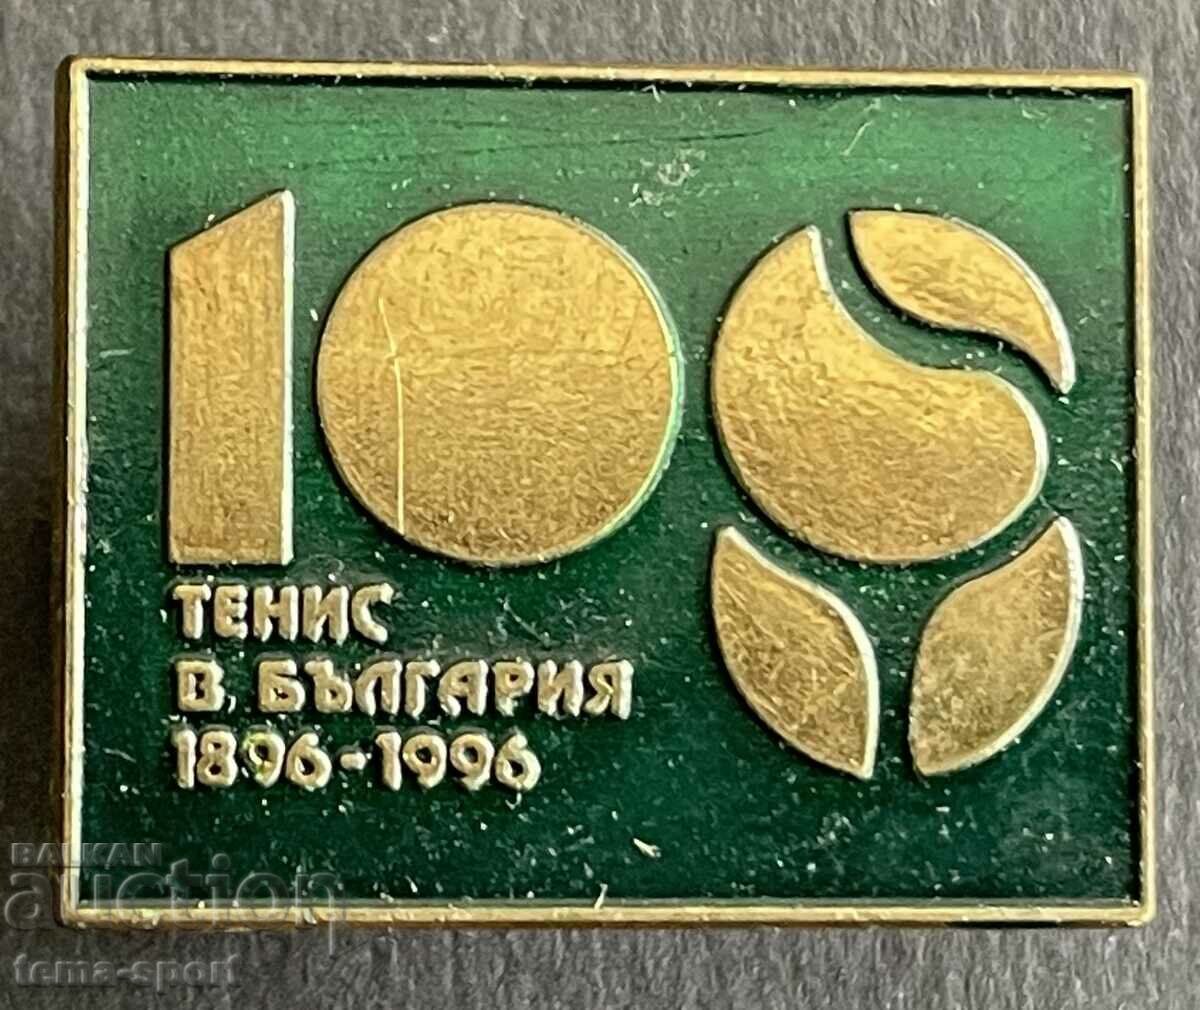 637 Bulgaria semnează 100 de ani. Tenis pe teren în Bulgaria 1996